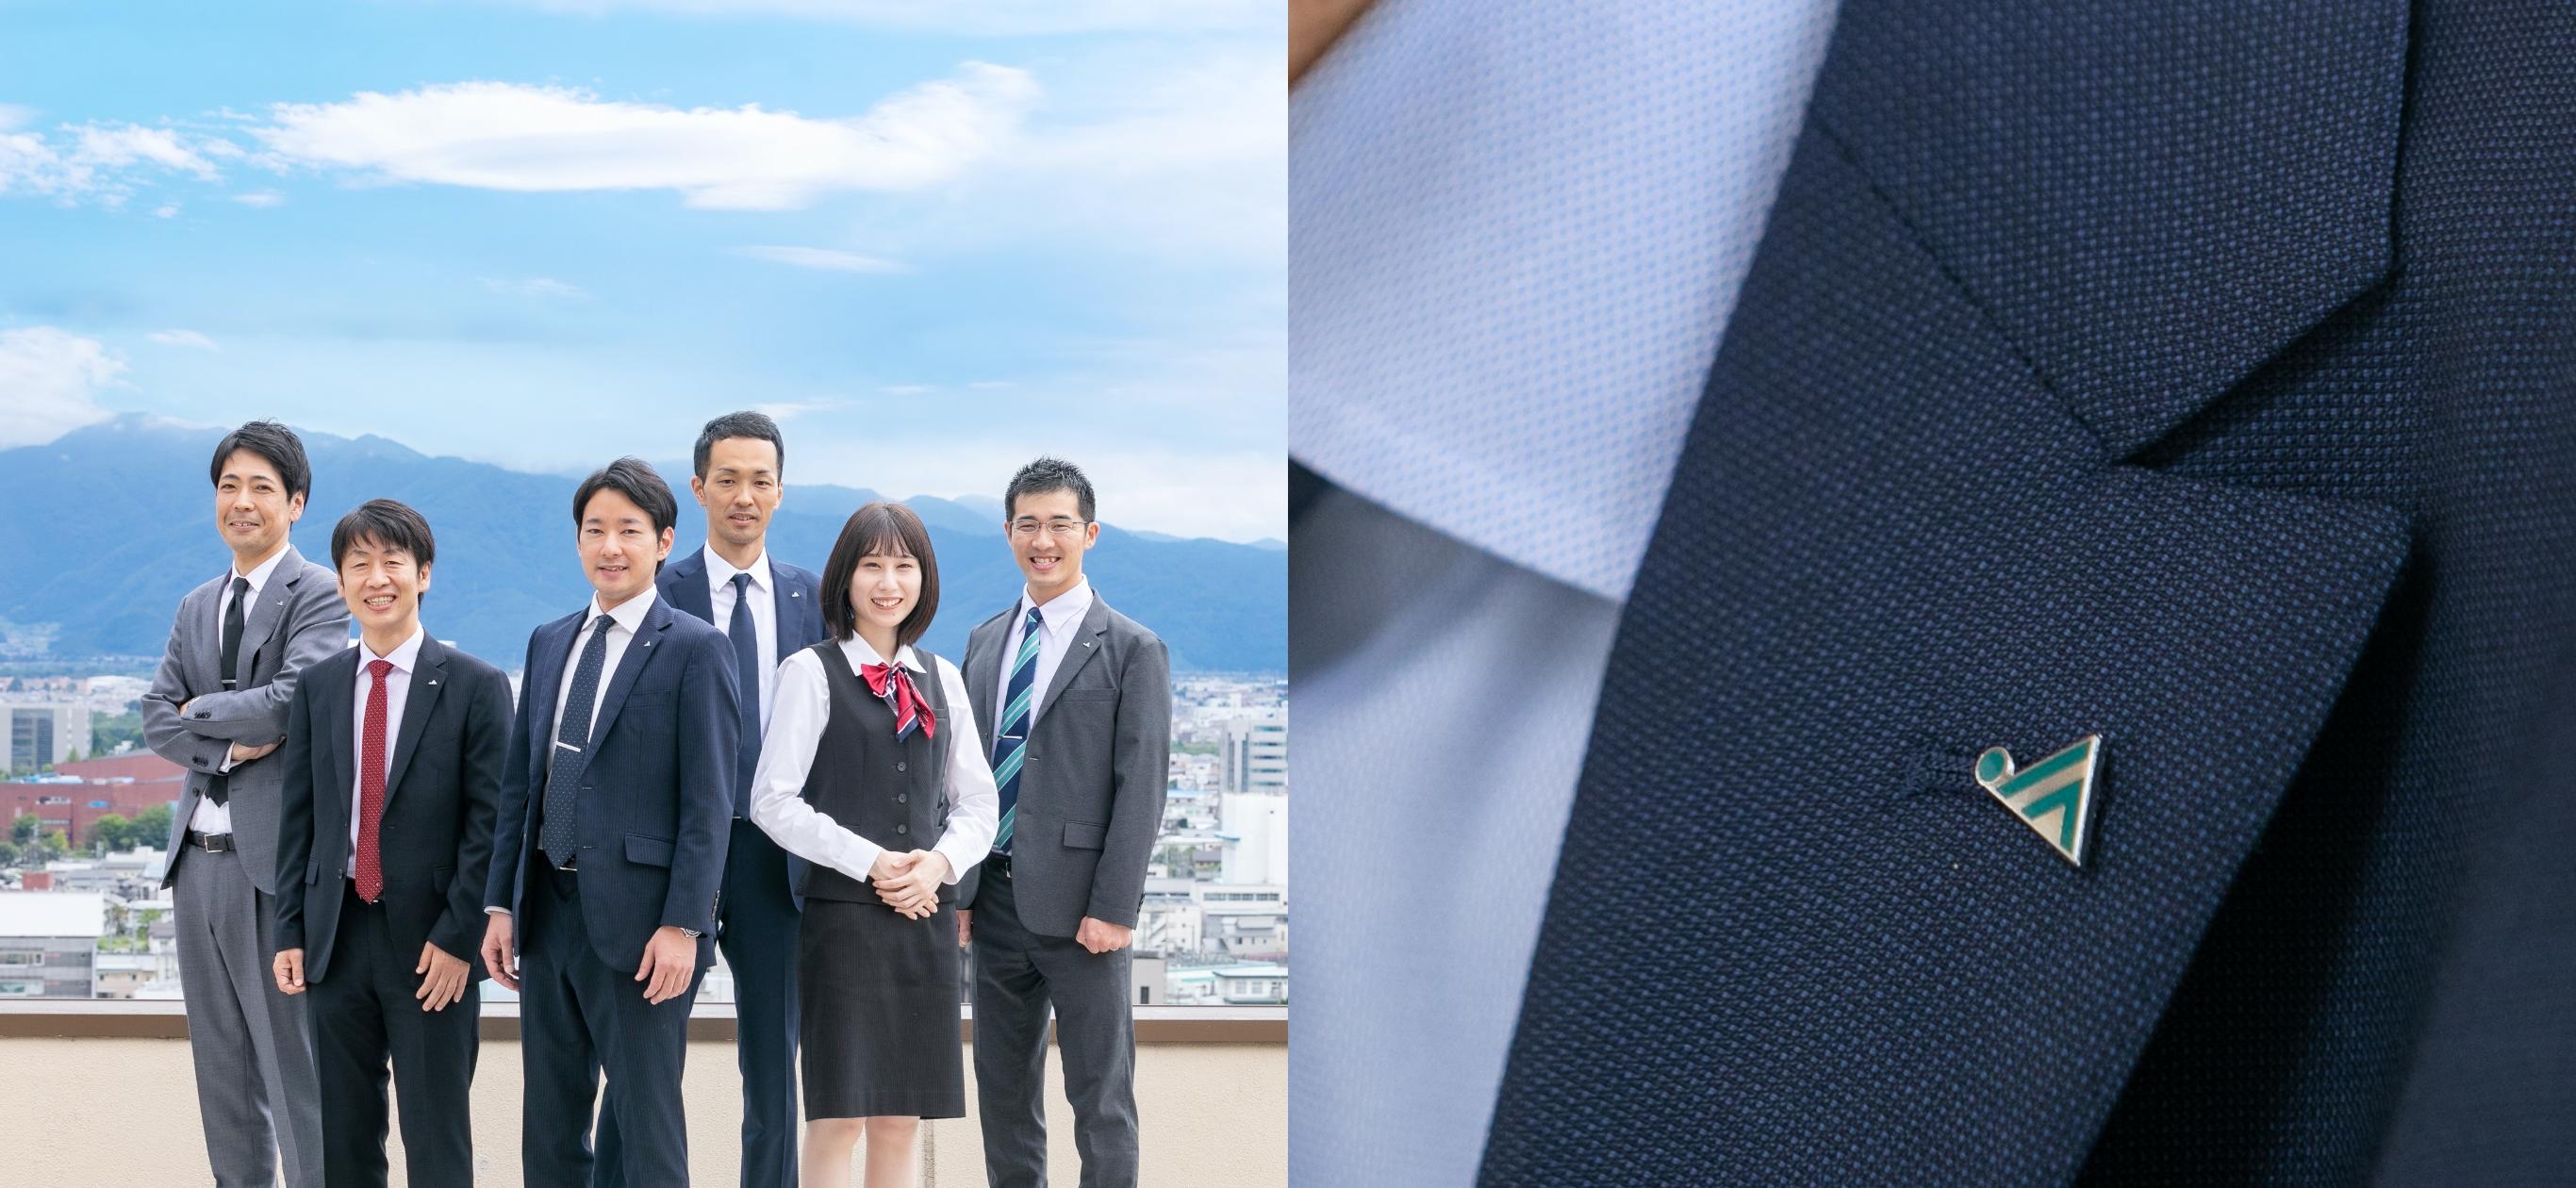 青空を背景に立つ長野県信連職員男性5名と女性1名写真とジャケットの襟にとめたJAバッチ